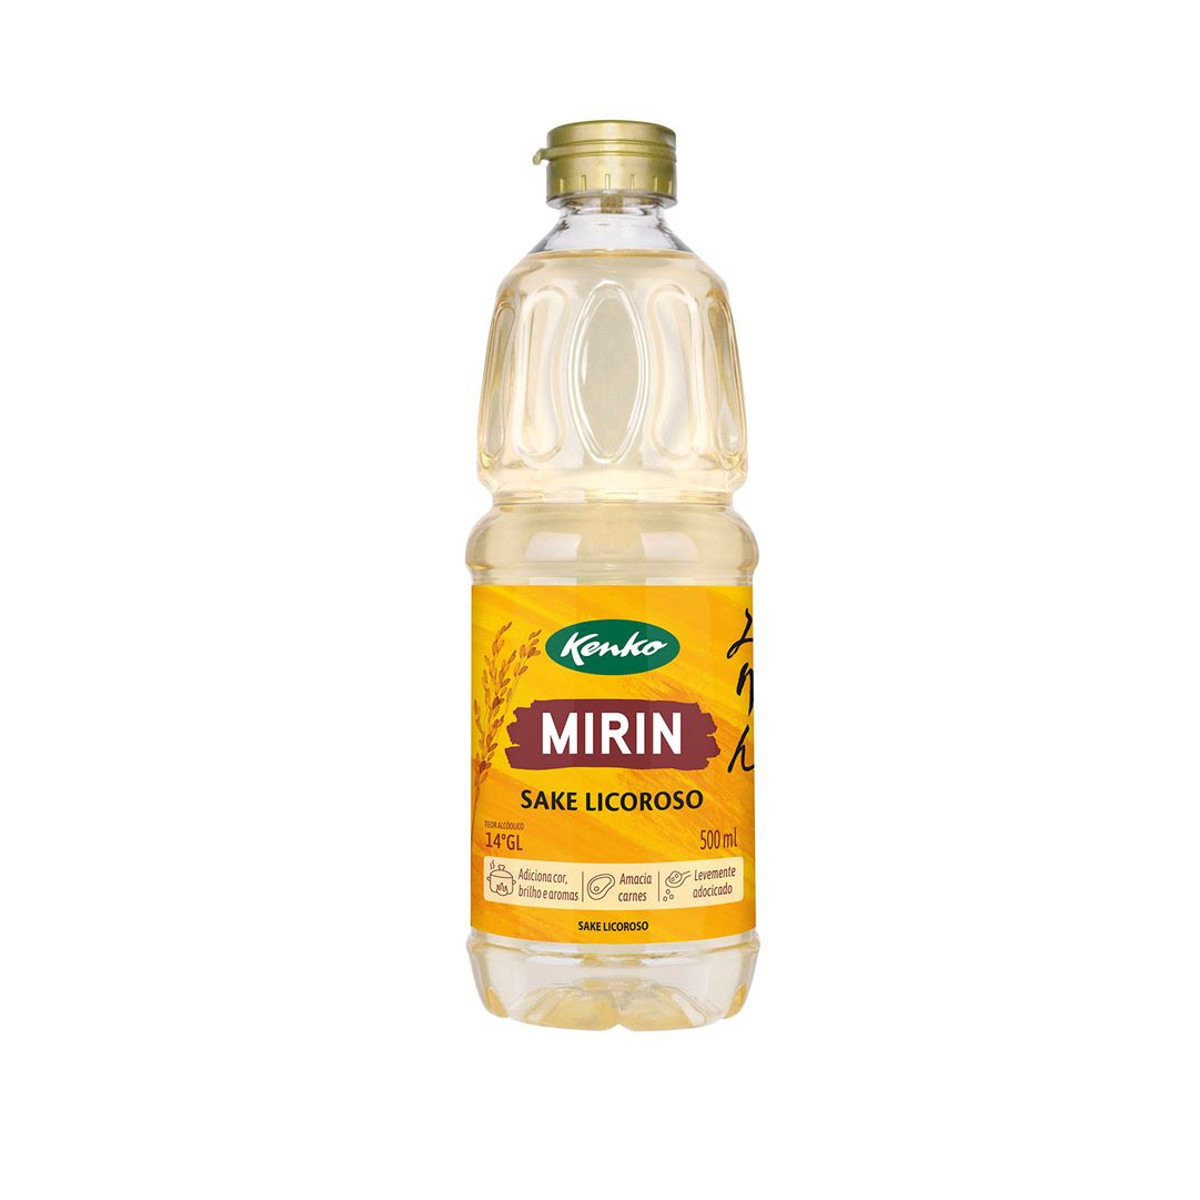 Sake Licoroso Mirin Kenko PET - 500 ml